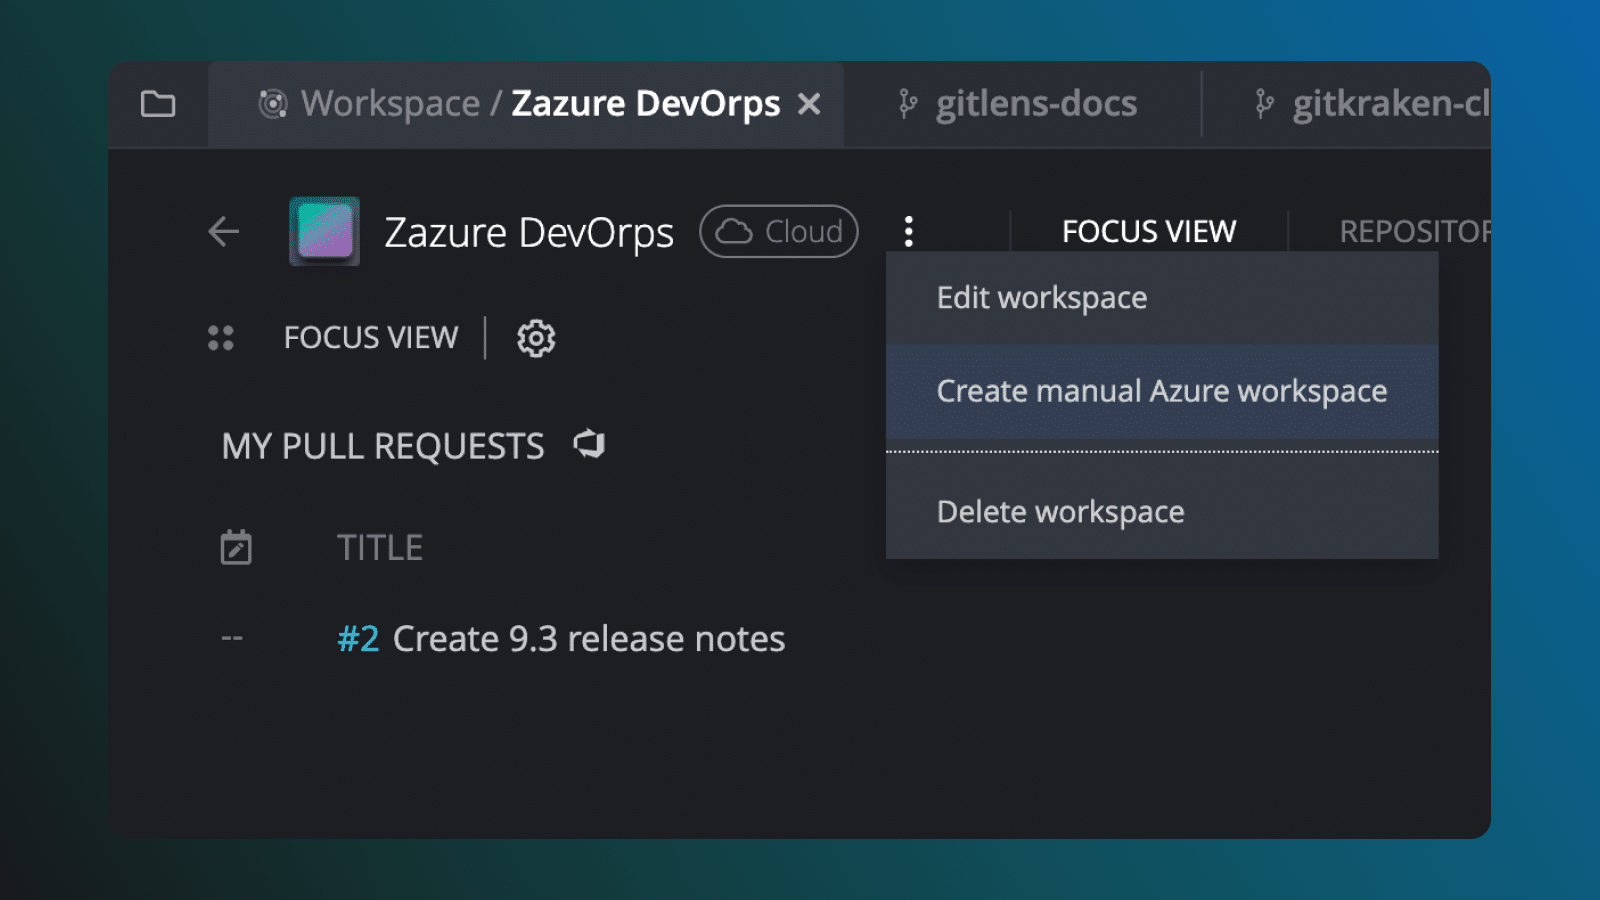 GitKraken Client Release 9.6 - Create customizable Azure DevOps Workspace